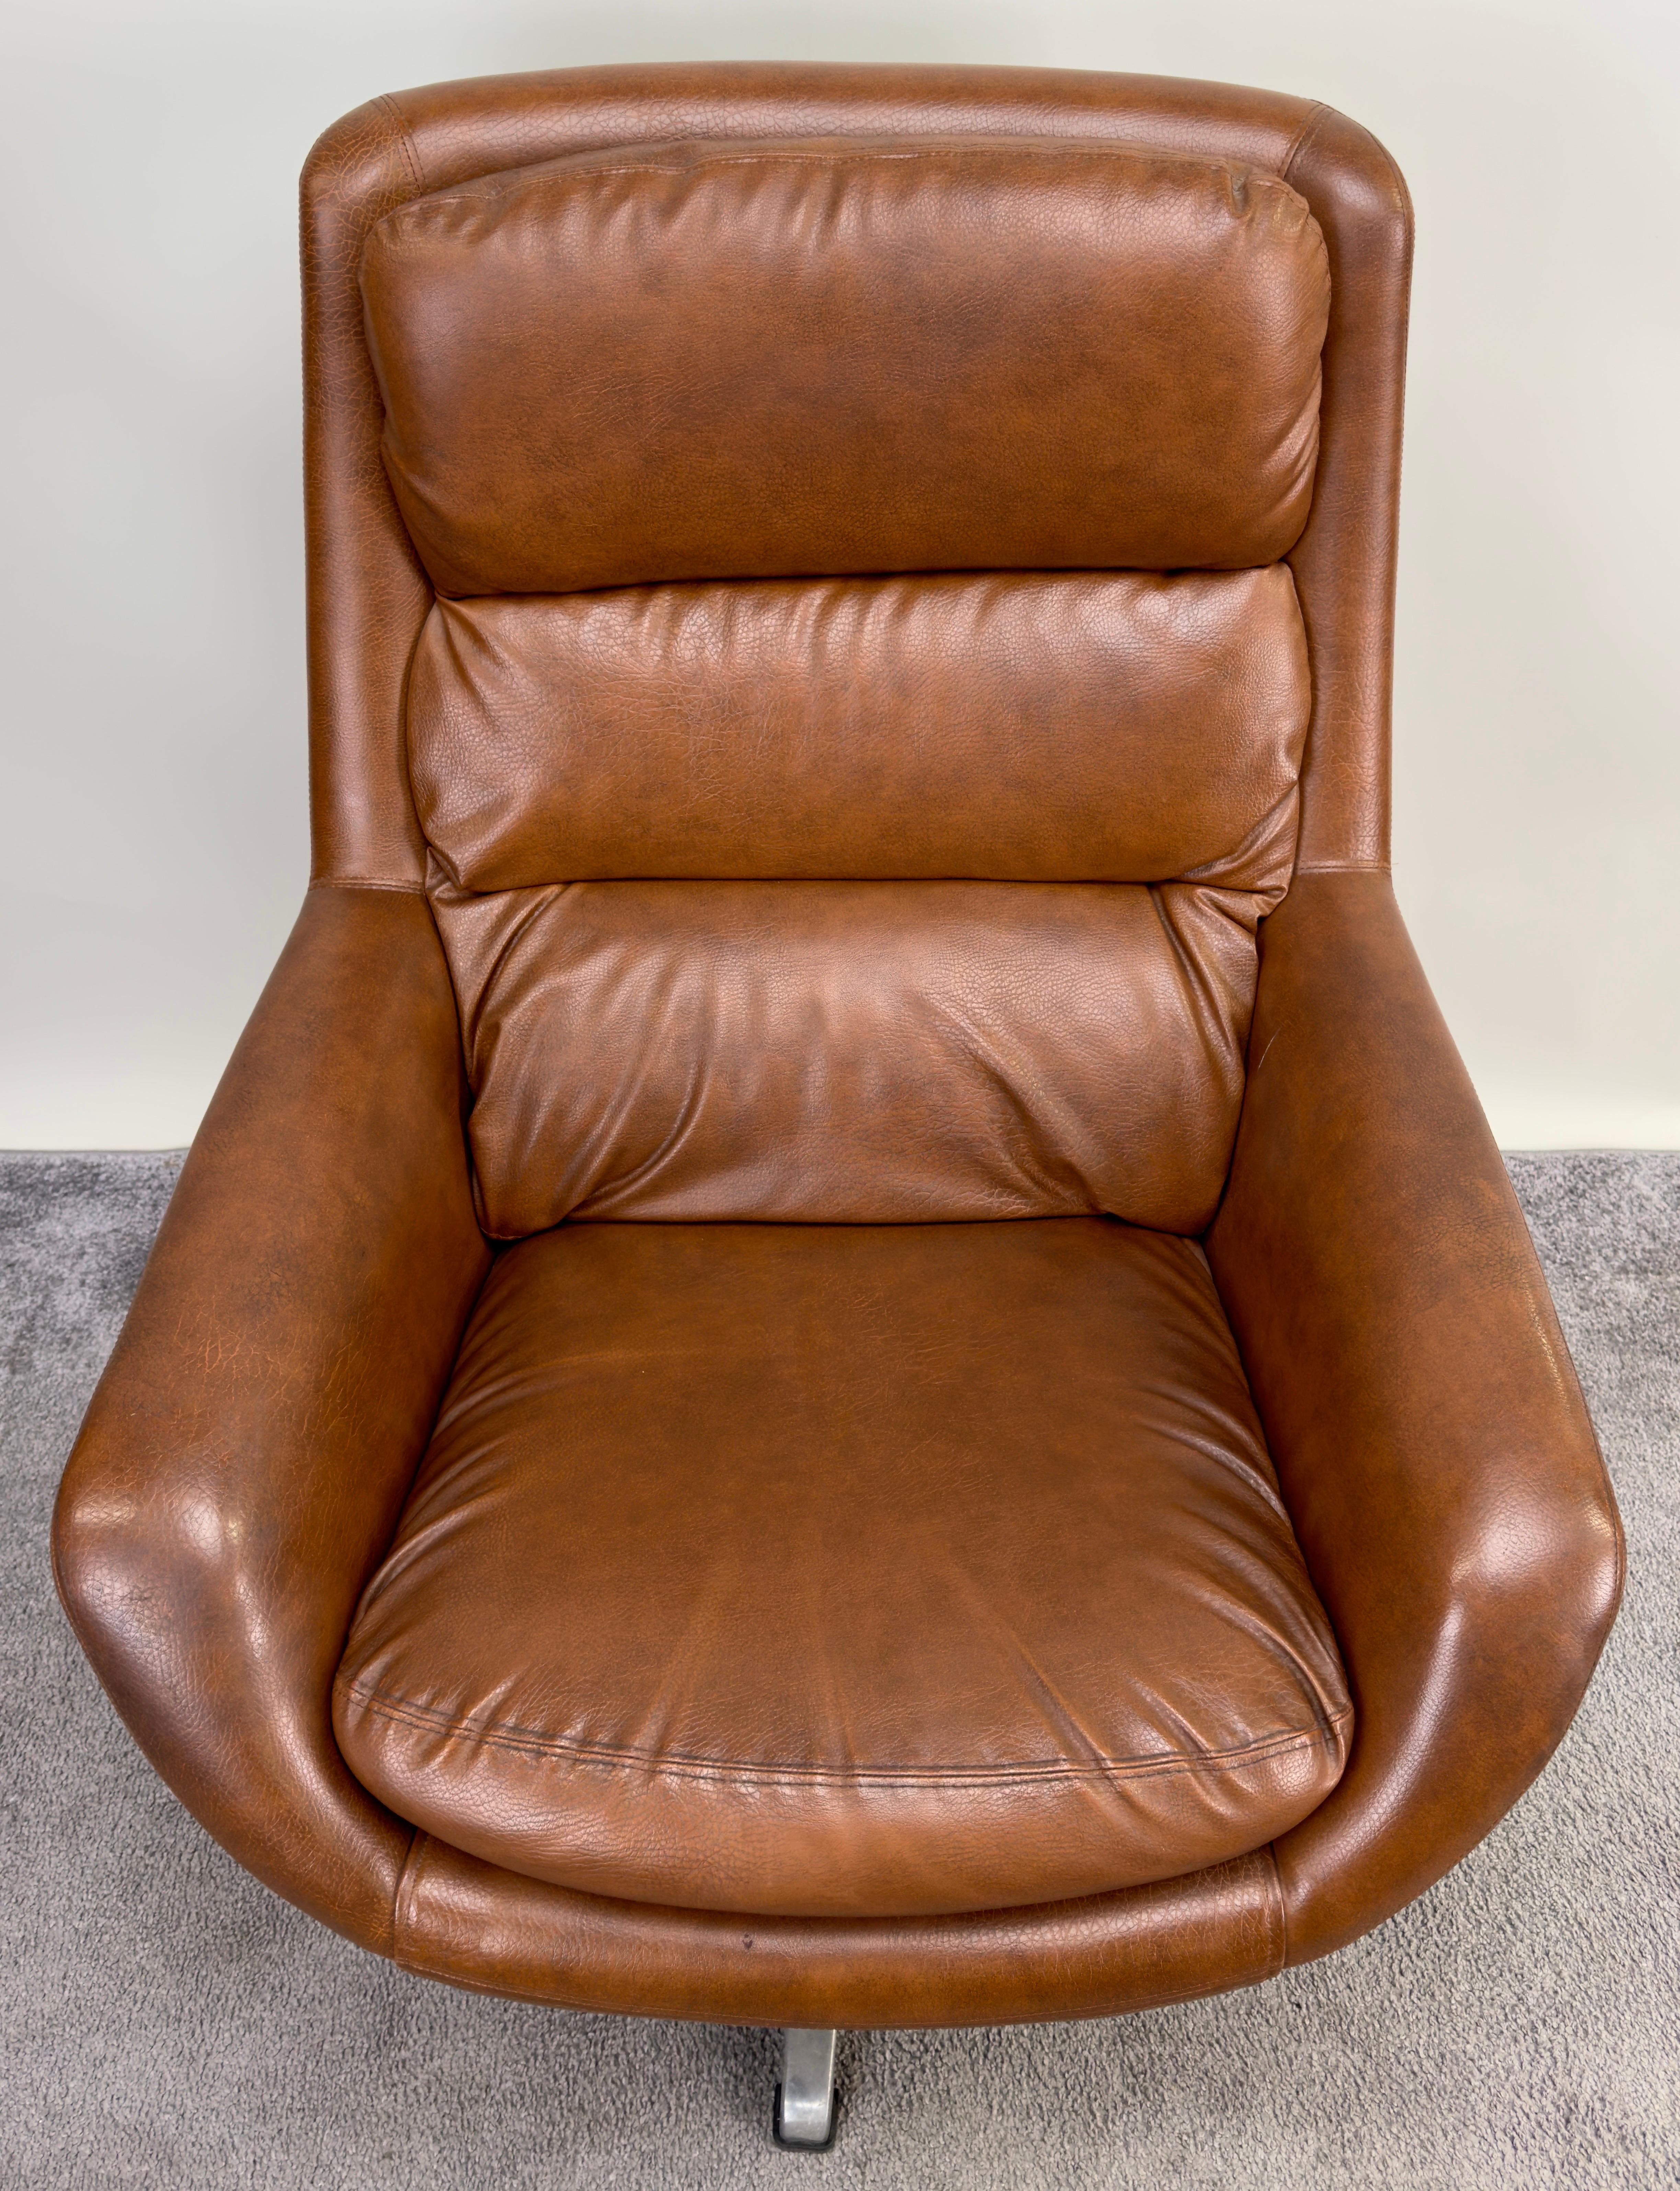 Suédois Chaise longue et ottoman suédois en simili-cuir Brown Mid Century Modern en vente